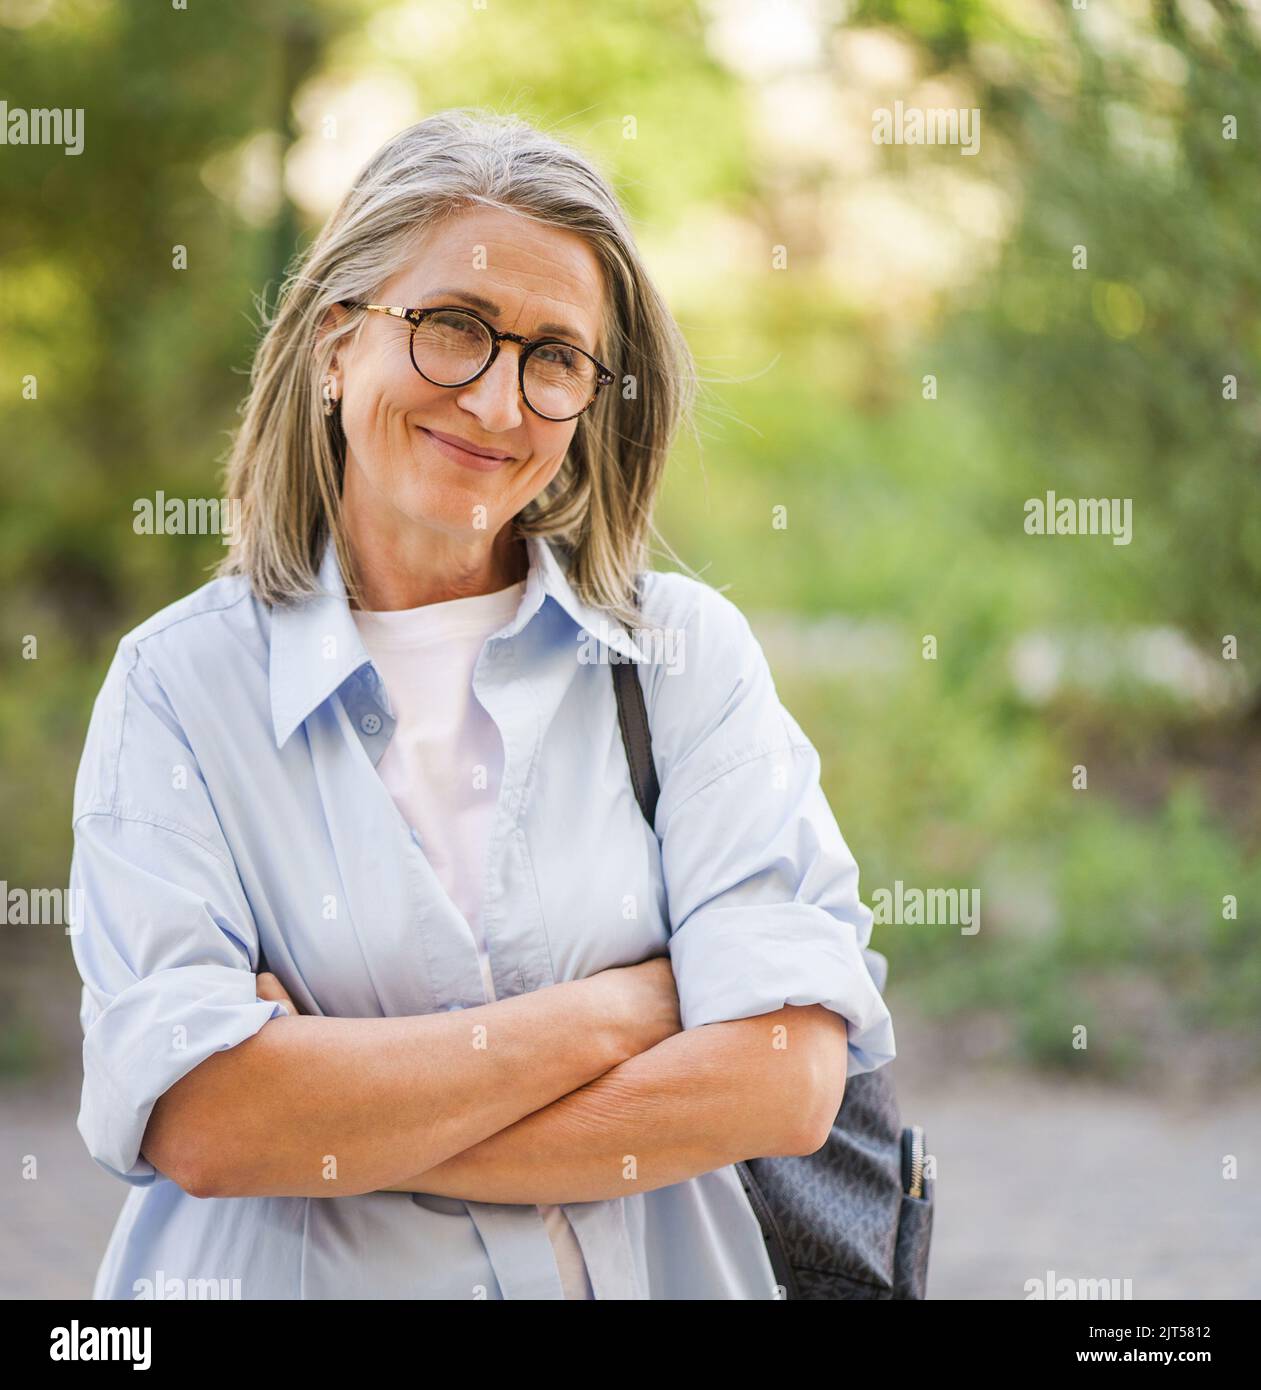 Schöne graue Haare reife Frau trägt Brille und Rucksack stehende Arme gefaltet im Freien genießen Urlaub rund um die Welt im Ruhestand reisen. Reife Frau mit perfekter Haut trägt blaues Hemd. Stockfoto